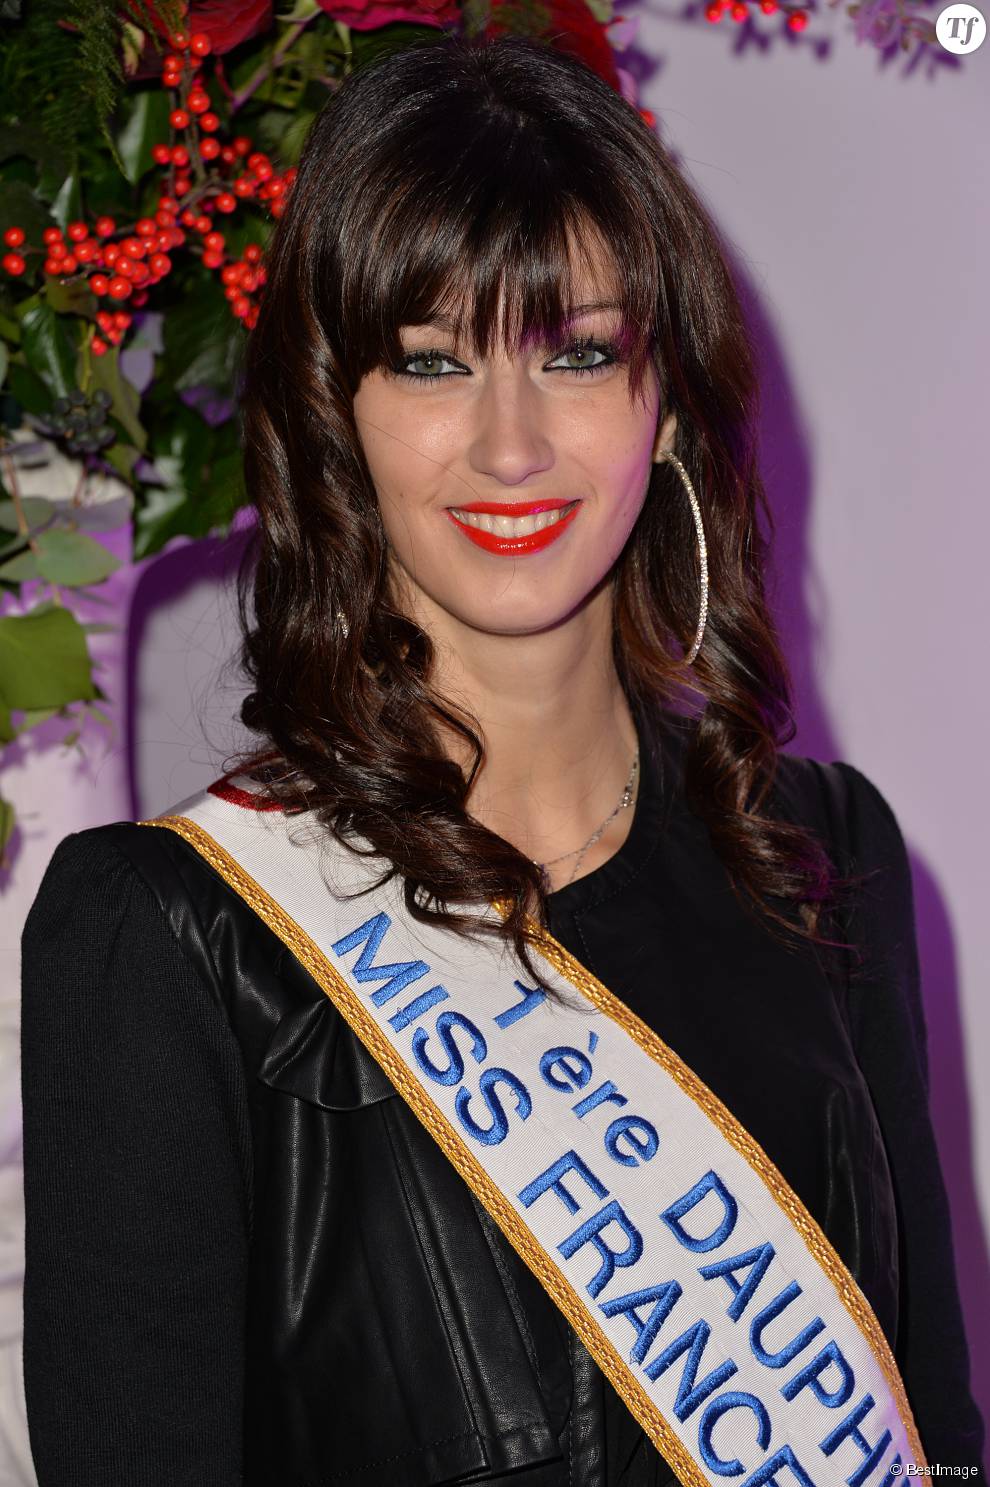   Sophie Vouzelaud (1ère Dauphine Miss France 2007) - Cocktail pour les 1 an de la maison Aloha Paris Luxe aux Salons Hoche à Paris, le 19 décembre 2014.  